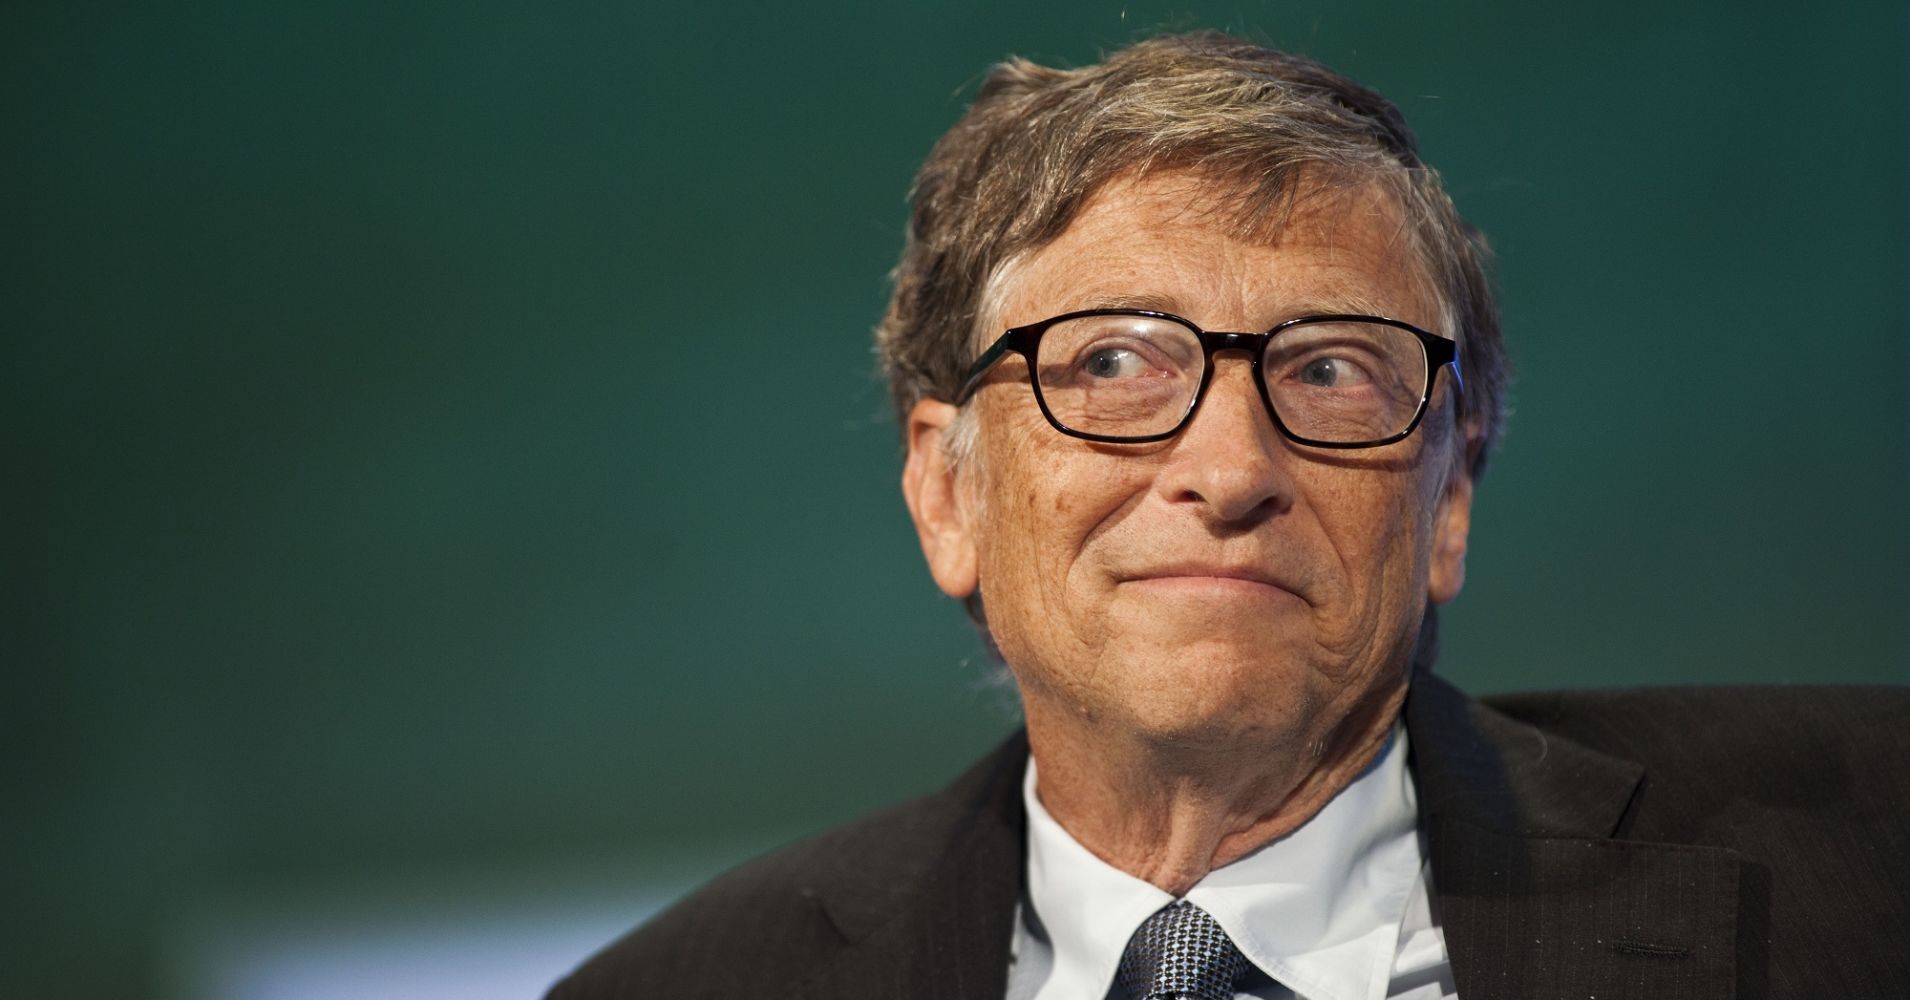 maiores empreendedores - imagem bill Gates